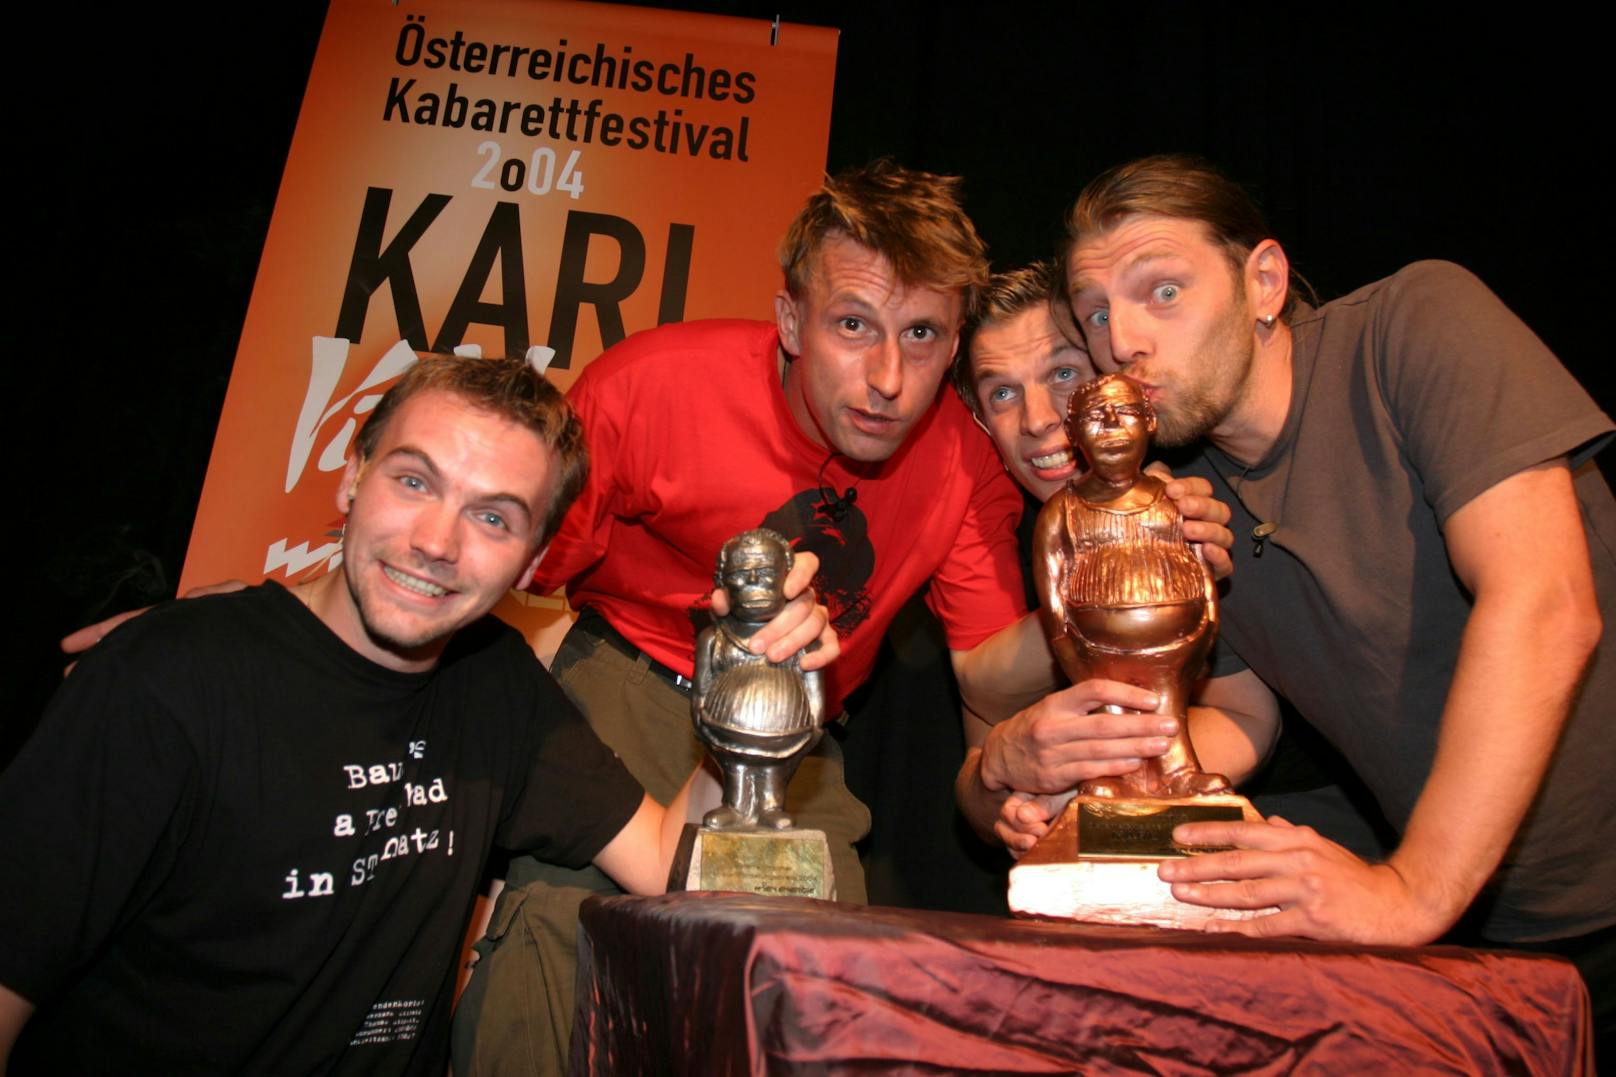 Der Durchbruch gelang ihm 2004 an der Seite von Klaus Eckel, Pepi Hopf und Martin Kosch. "Die lange Nacht des Kabaretts" wurde mit dem Österreichischen Kabarettpreis ausgezeichnet.&nbsp;